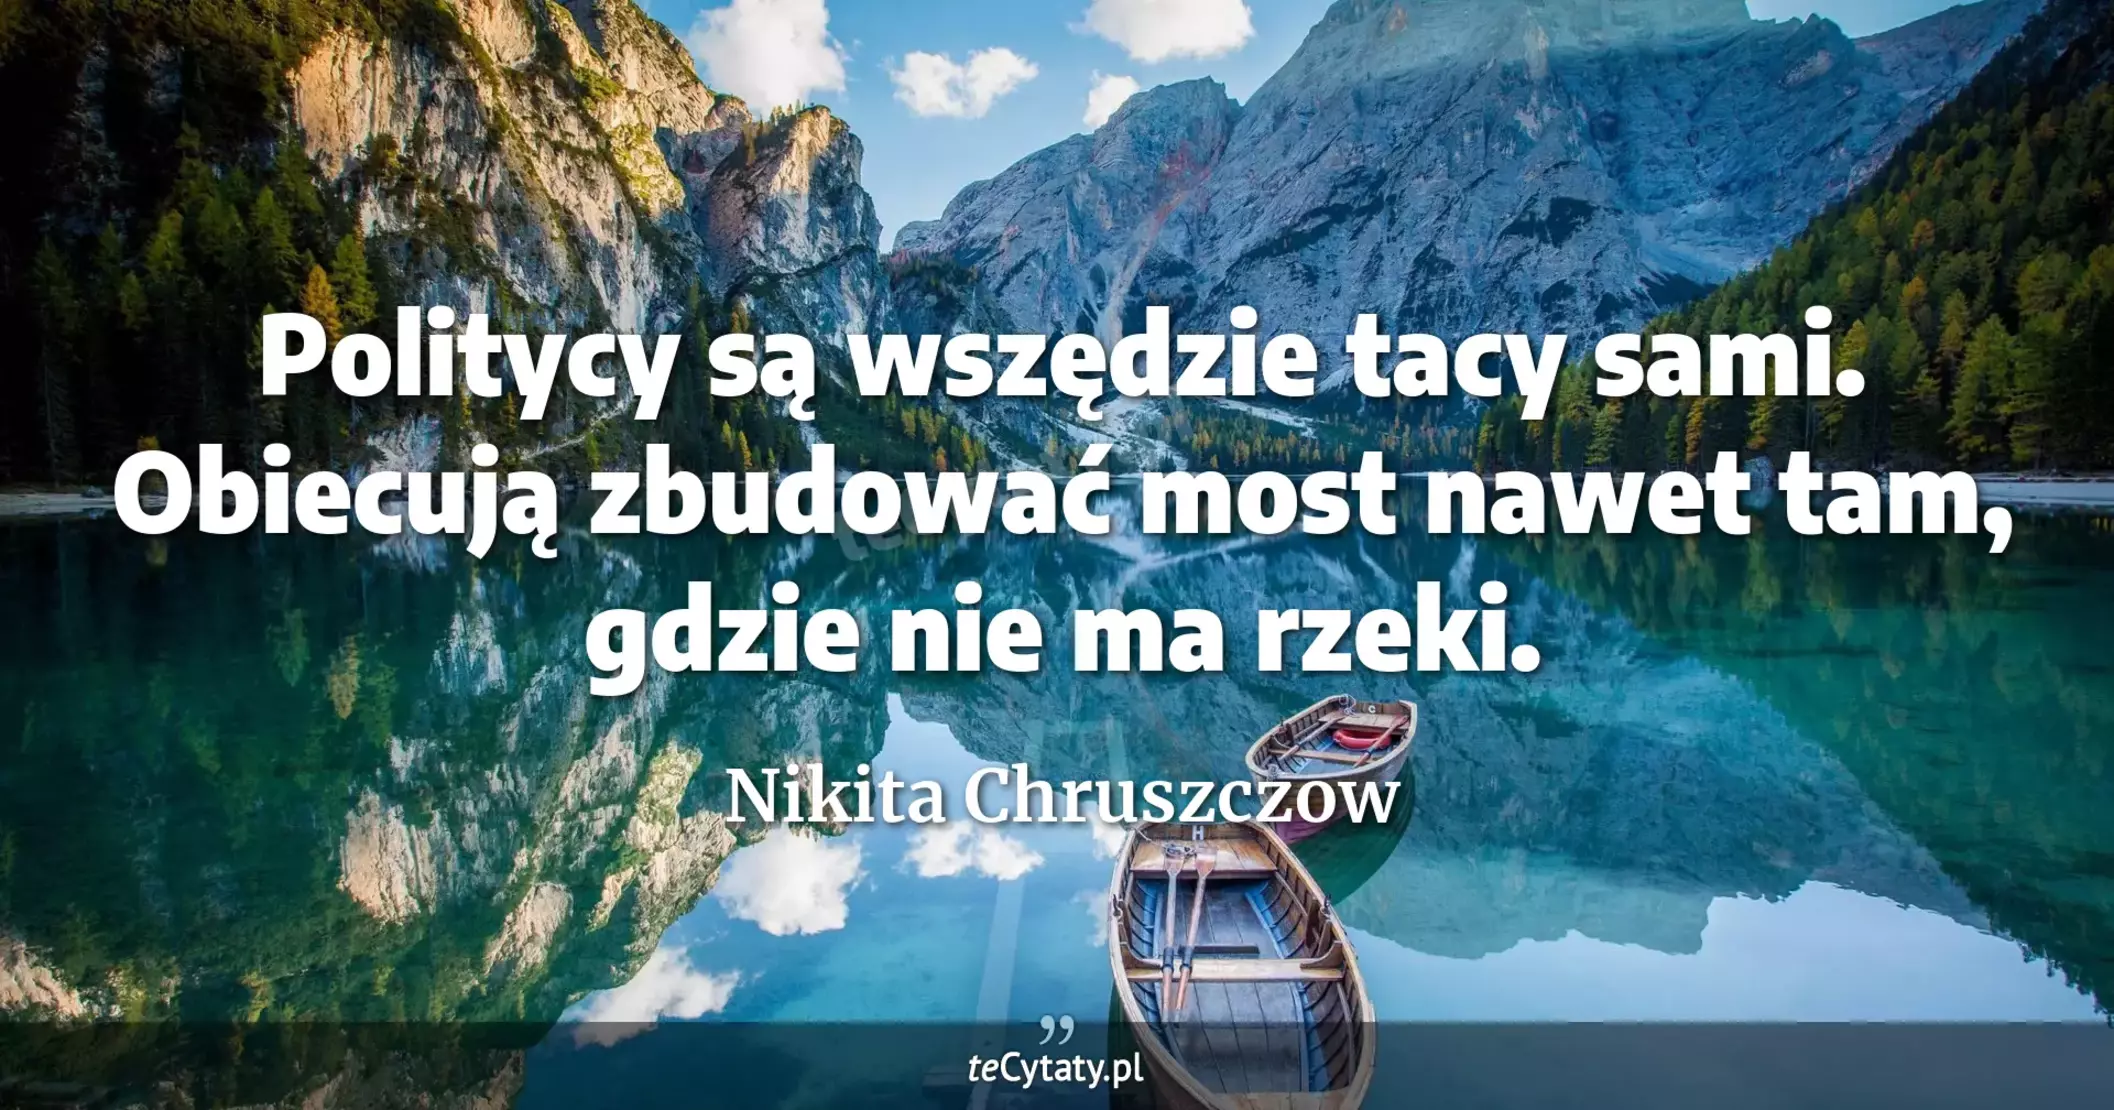 Politycy są wszędzie tacy sami. Obiecują zbudować most nawet tam, gdzie nie ma rzeki. - Nikita Chruszczow